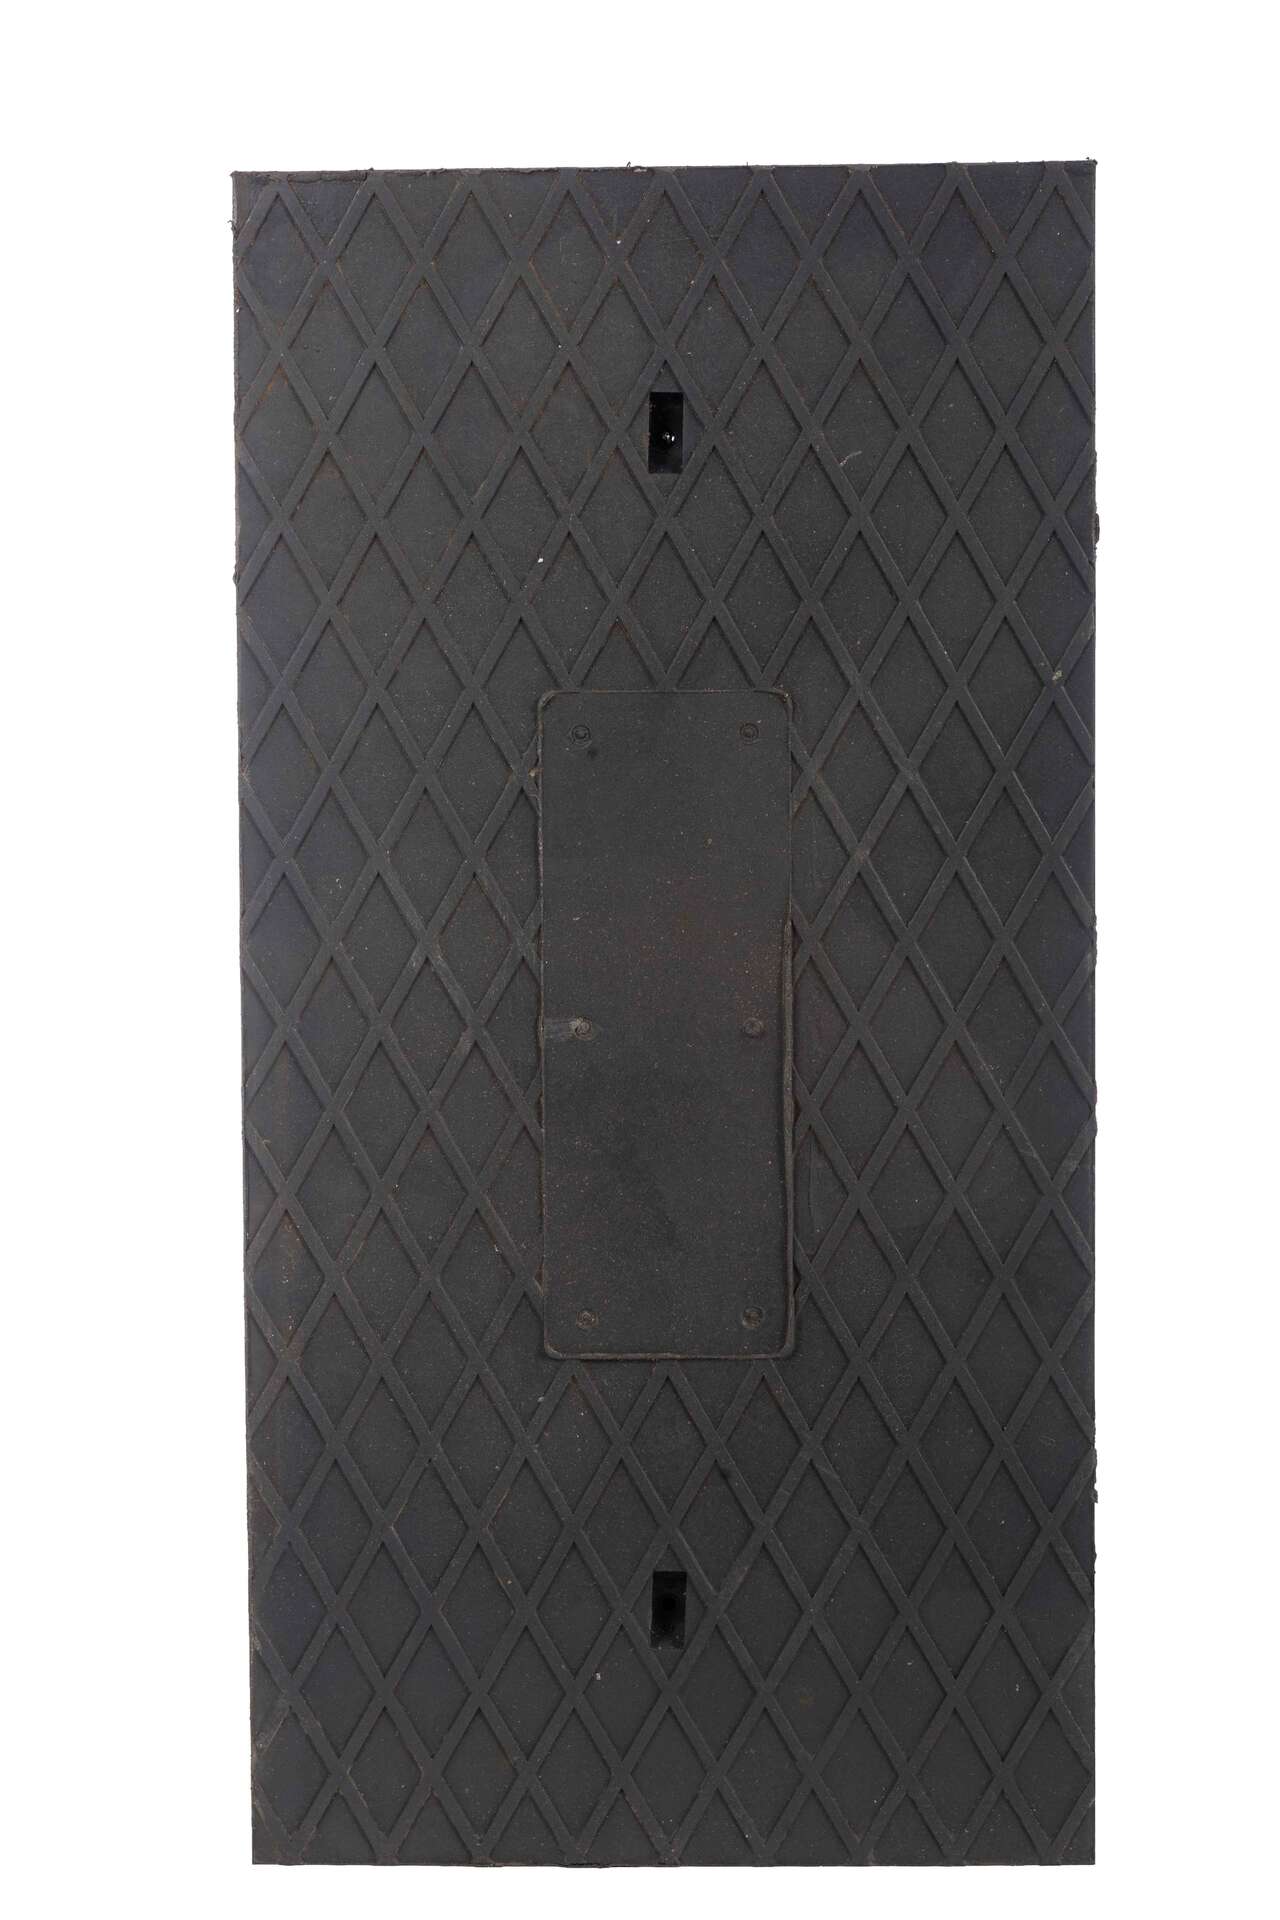 Frameless manhole cover – rectangular RCB125 1000/500/60